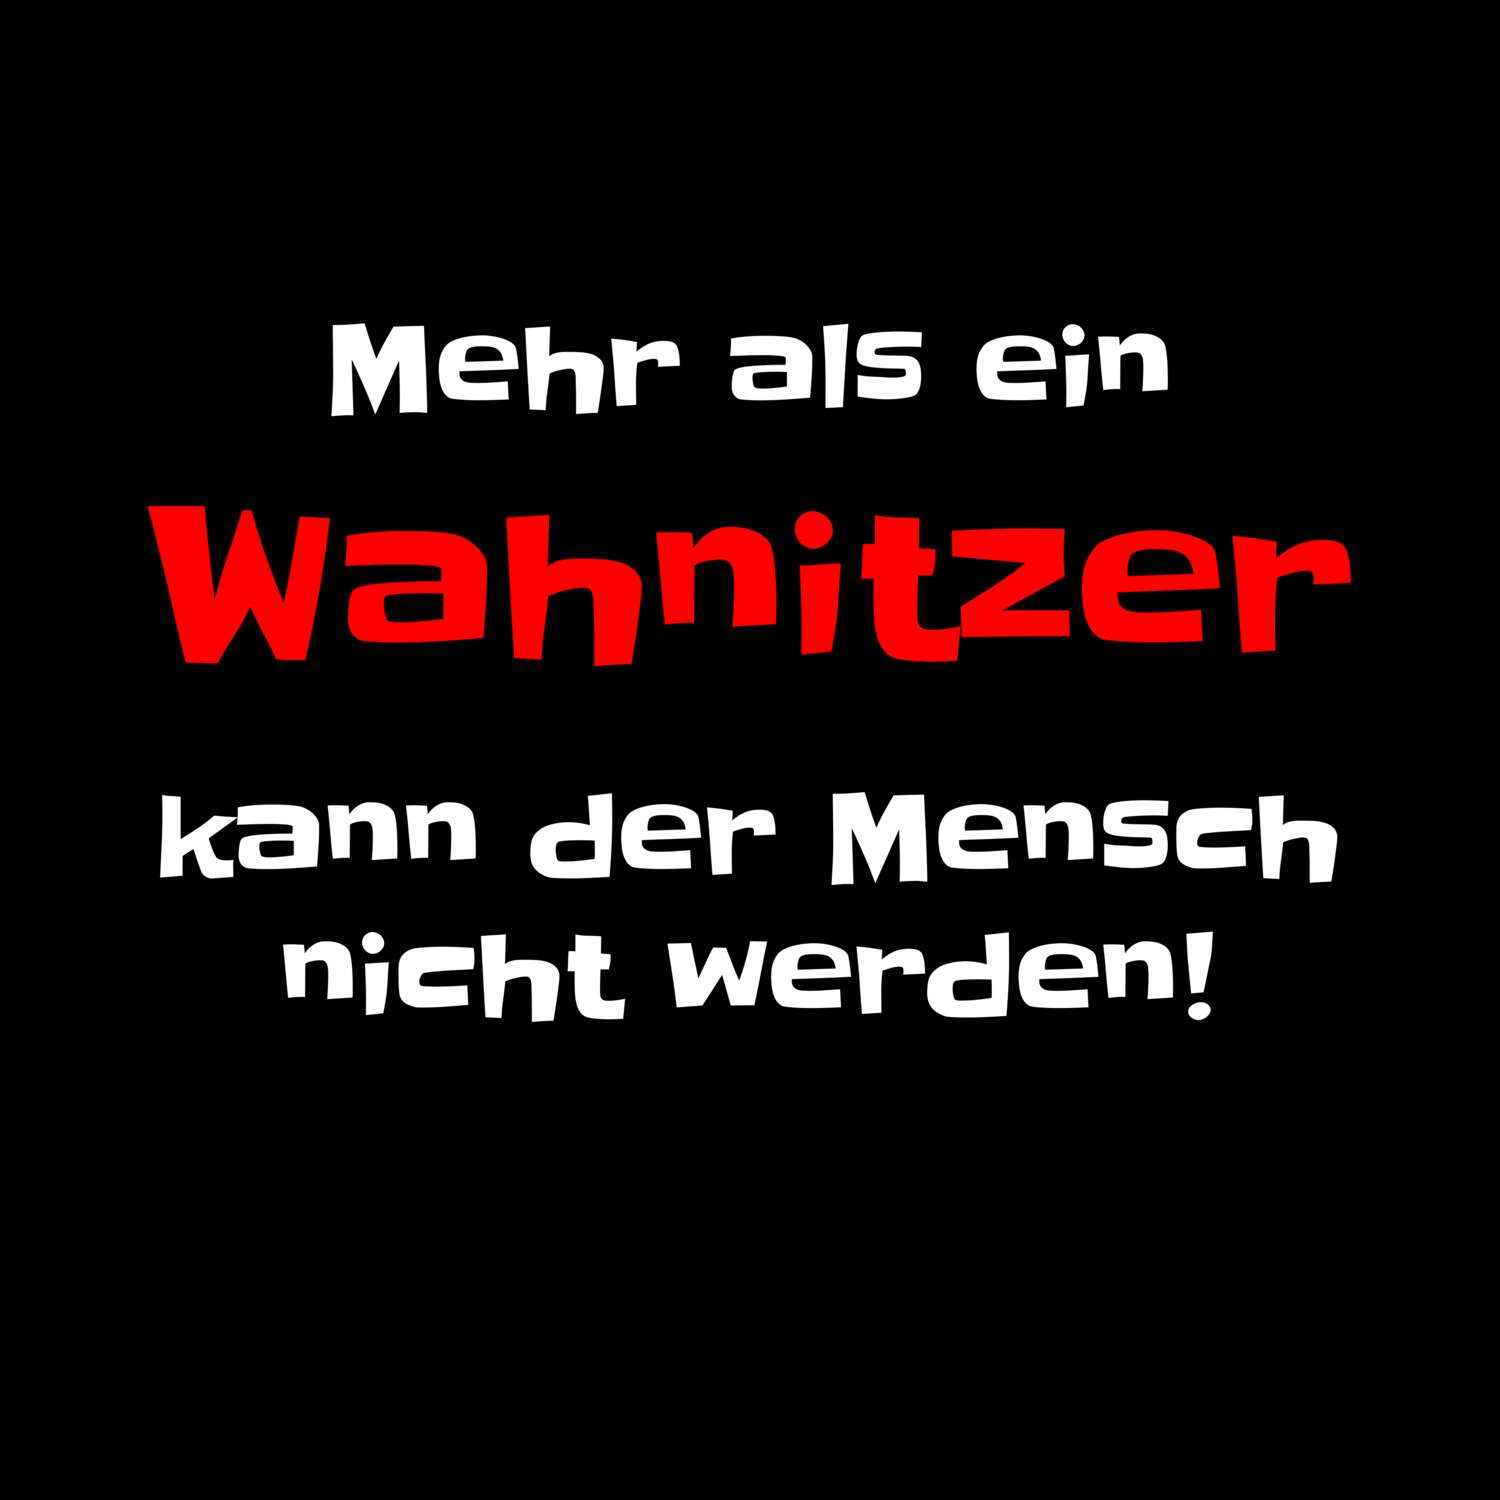 Wahnitz T-Shirt »Mehr als ein«